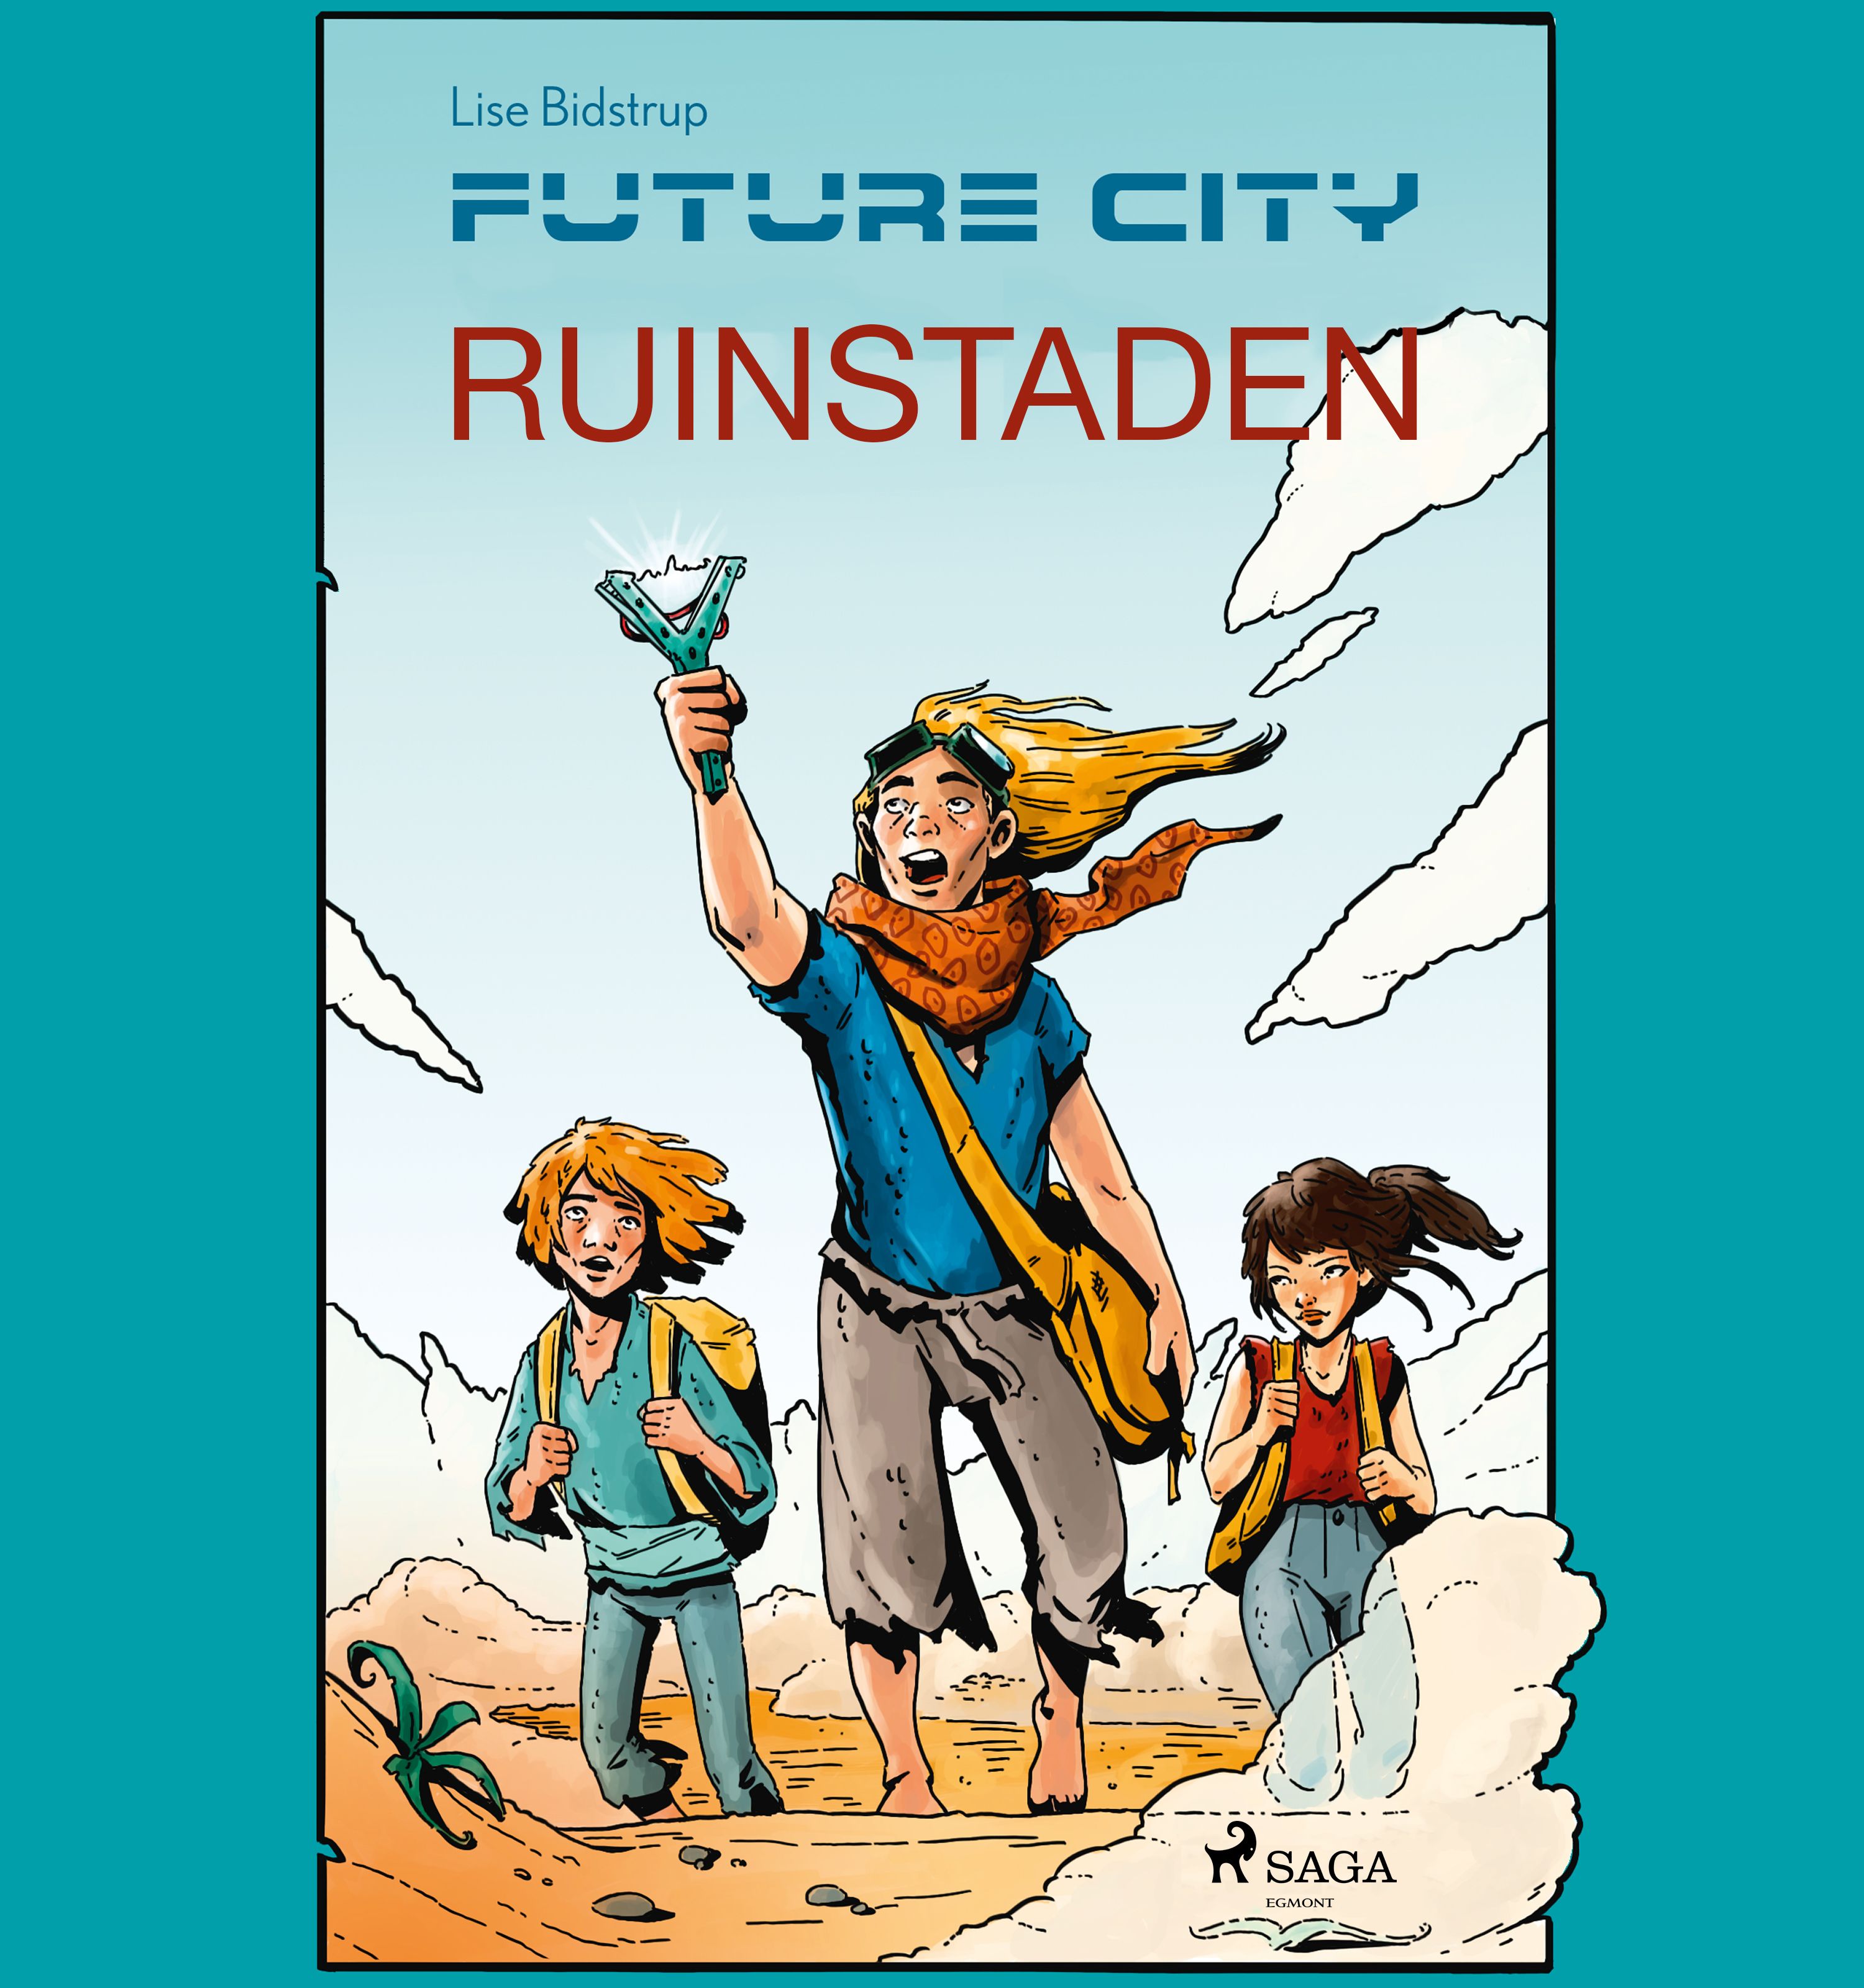 Future city 1: Ruinstaden, ljudbok av Lise Bidstrup